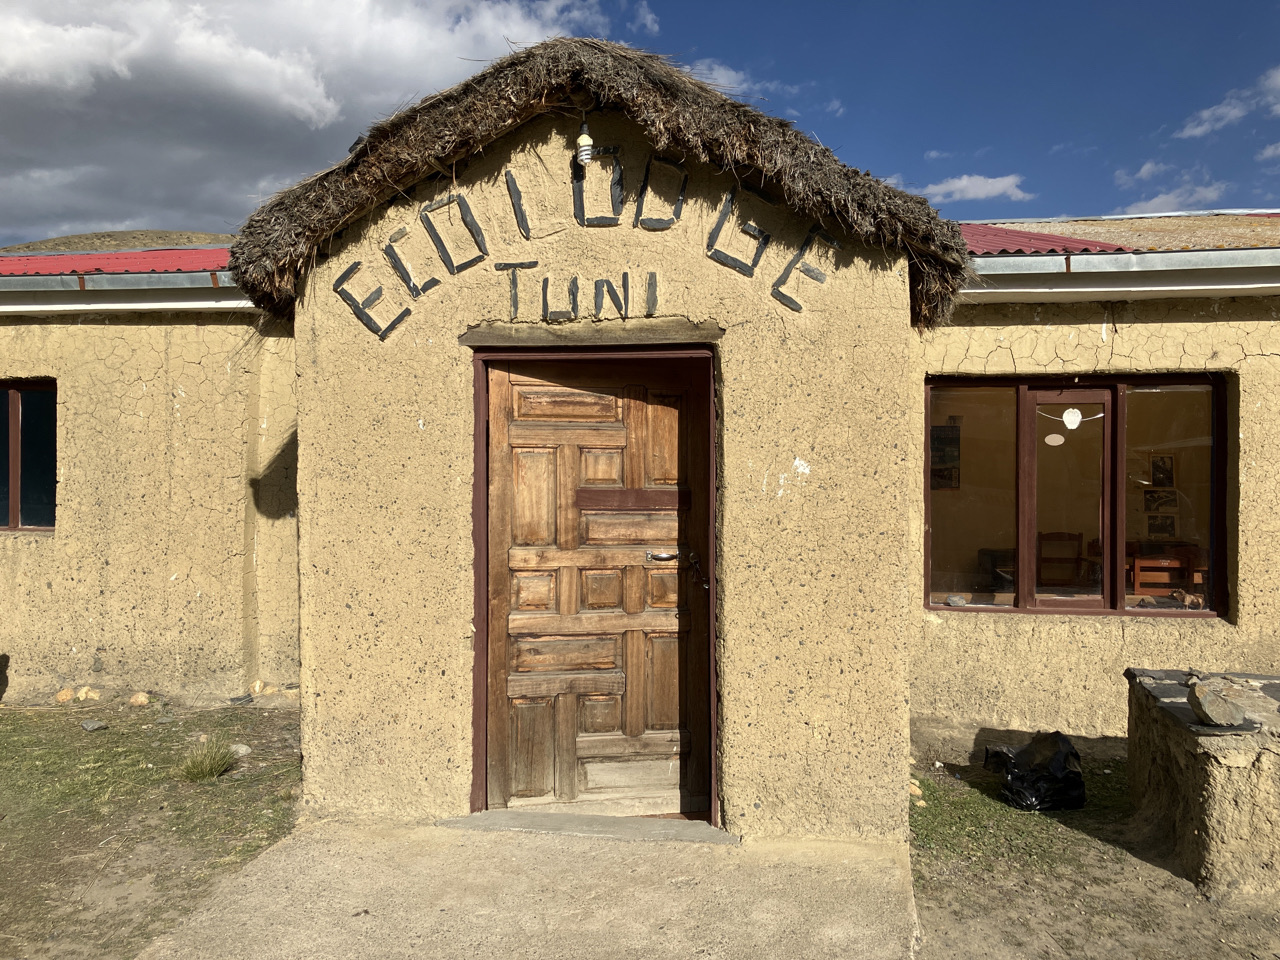 Carnets et photos de voyage Bolivie - Etape 14 la route des incas - Tuni et la maison Andres